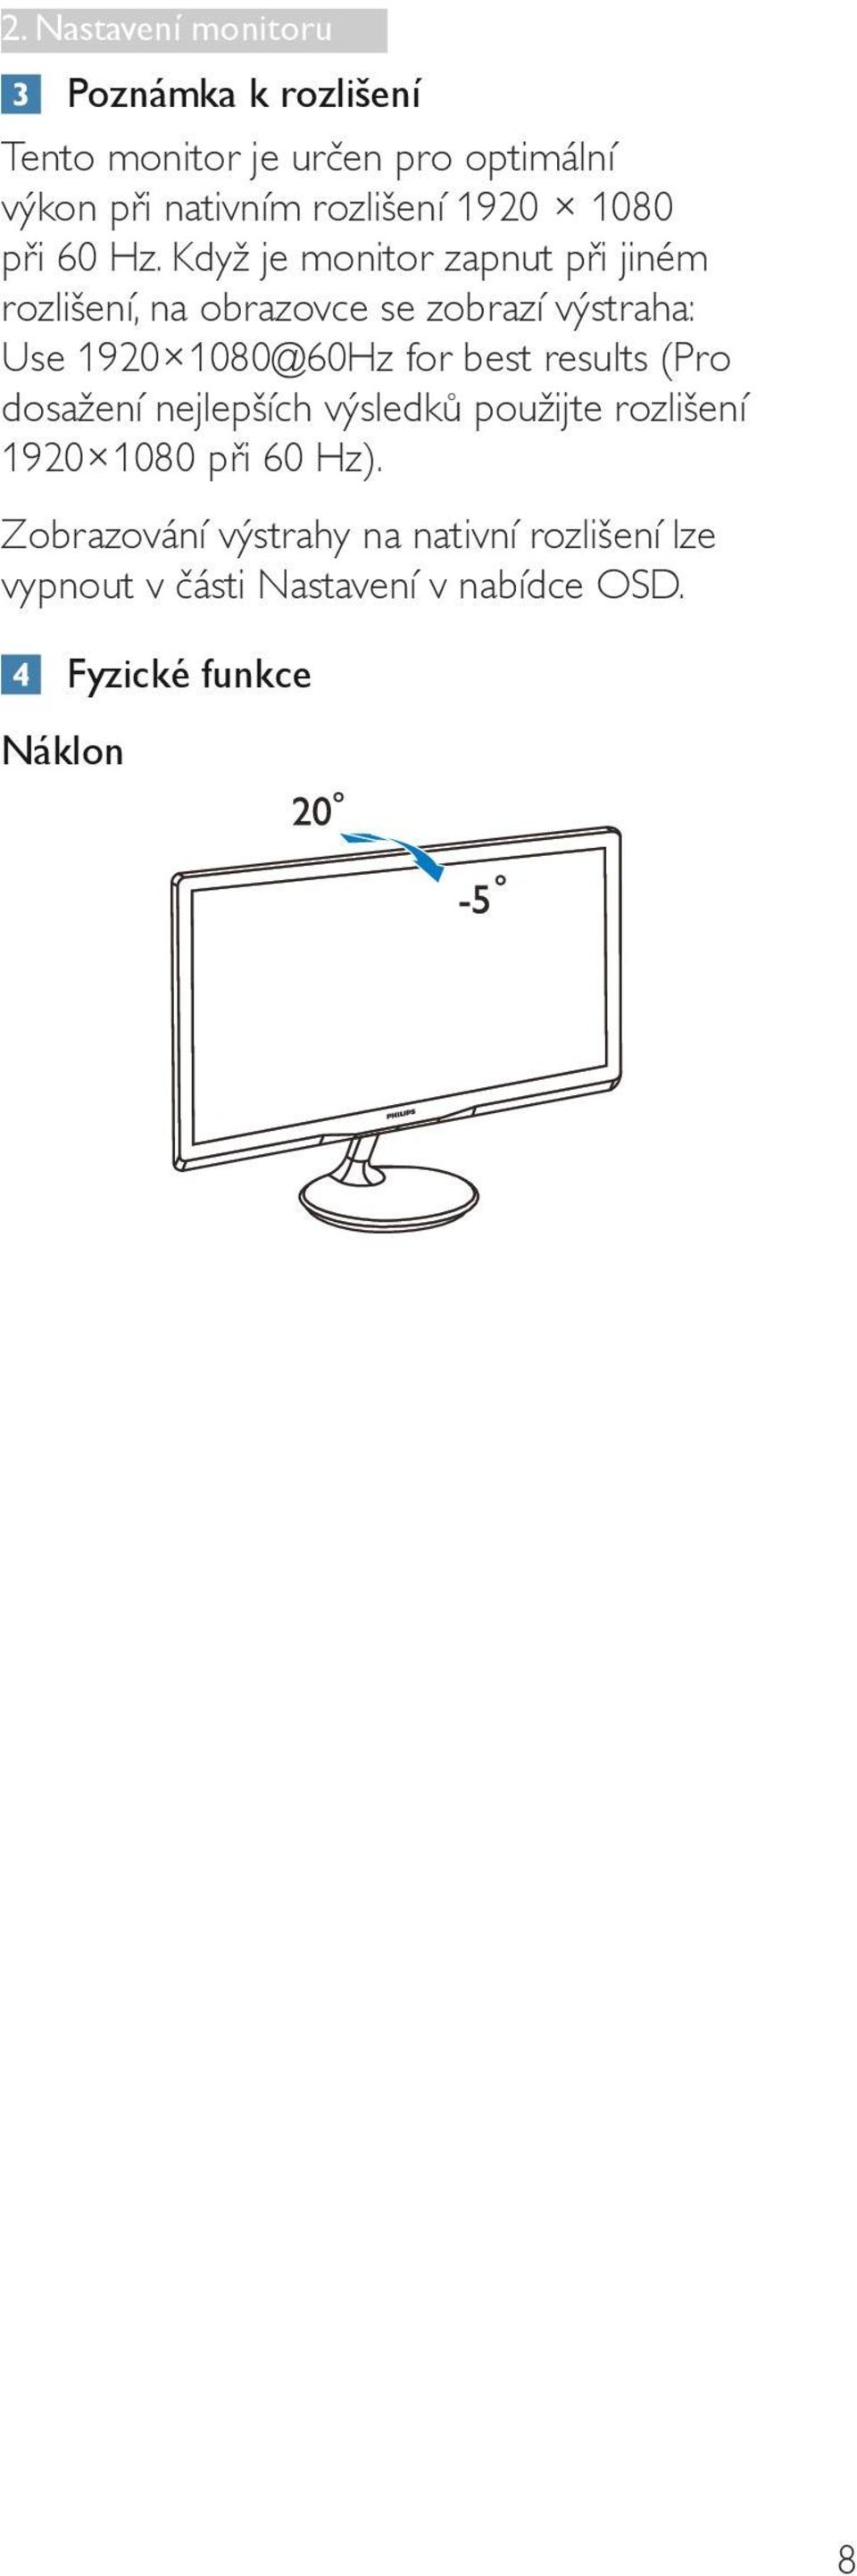 Když je monitor zapnut při jiném rozlišení, na obrazovce se zobrazí výstraha: Use 1920 1080@60Hz for best